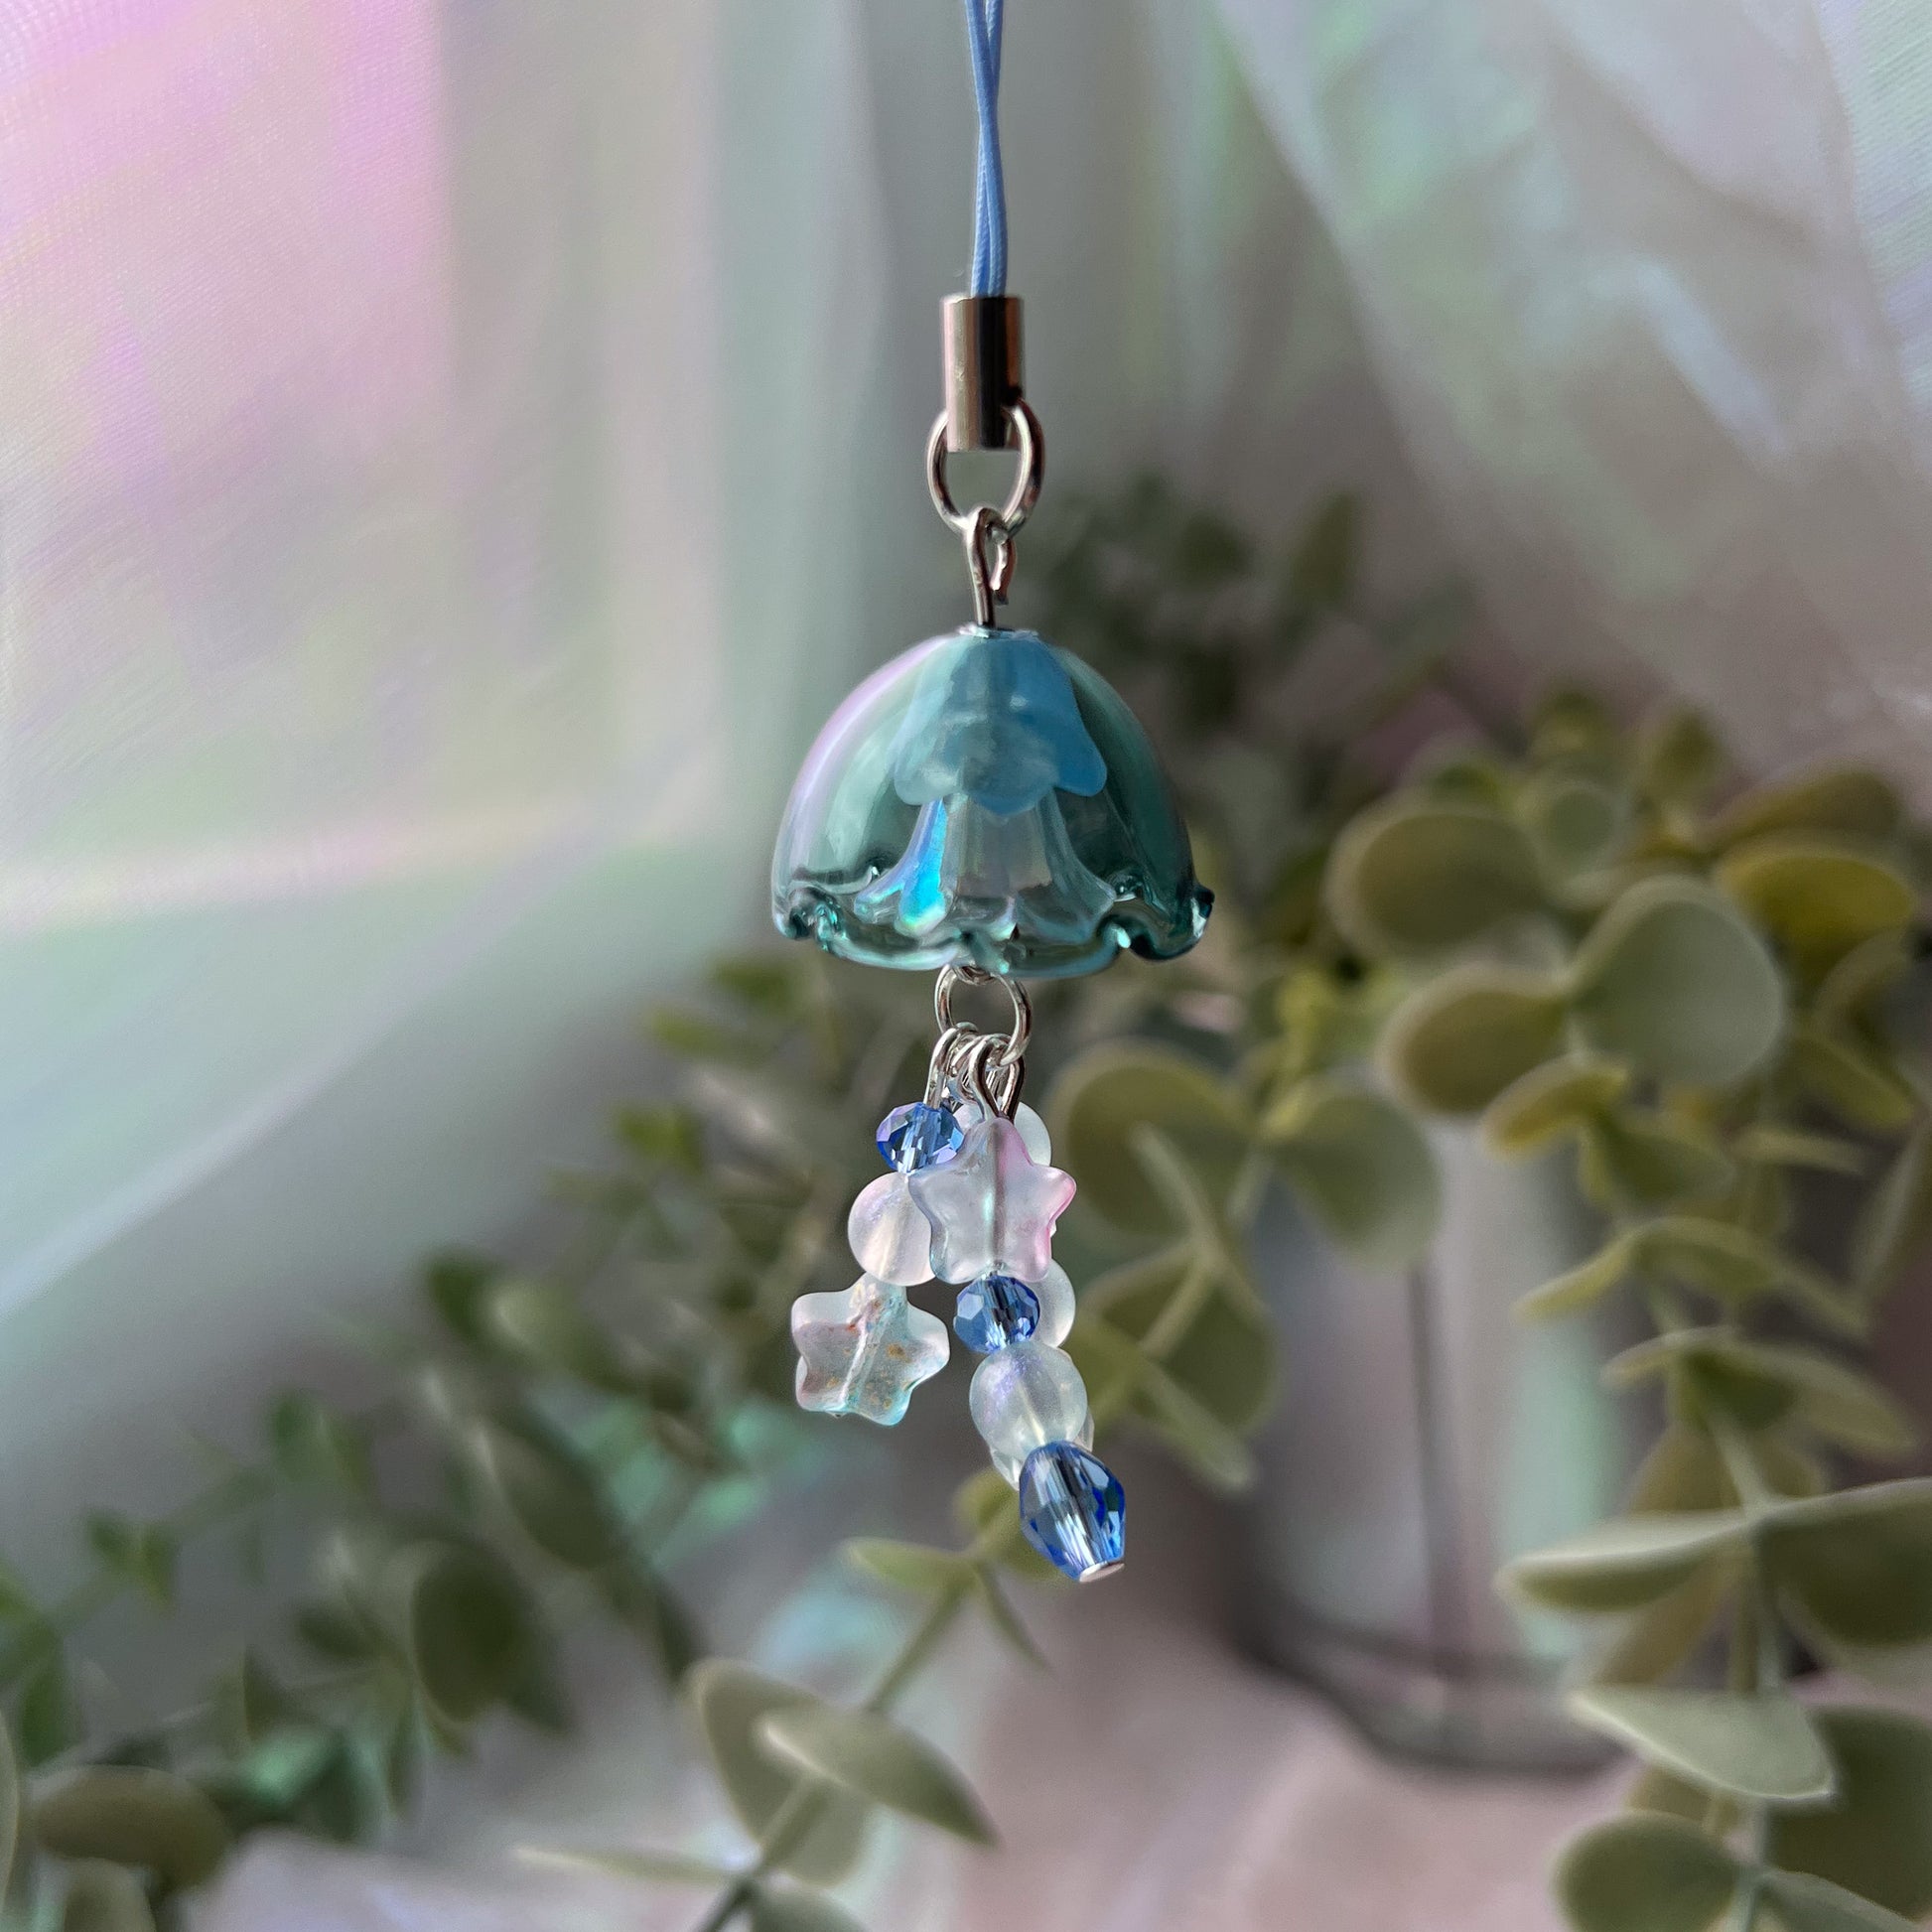 Jellyfish Keychain / Phone Charm - Splash BLUE